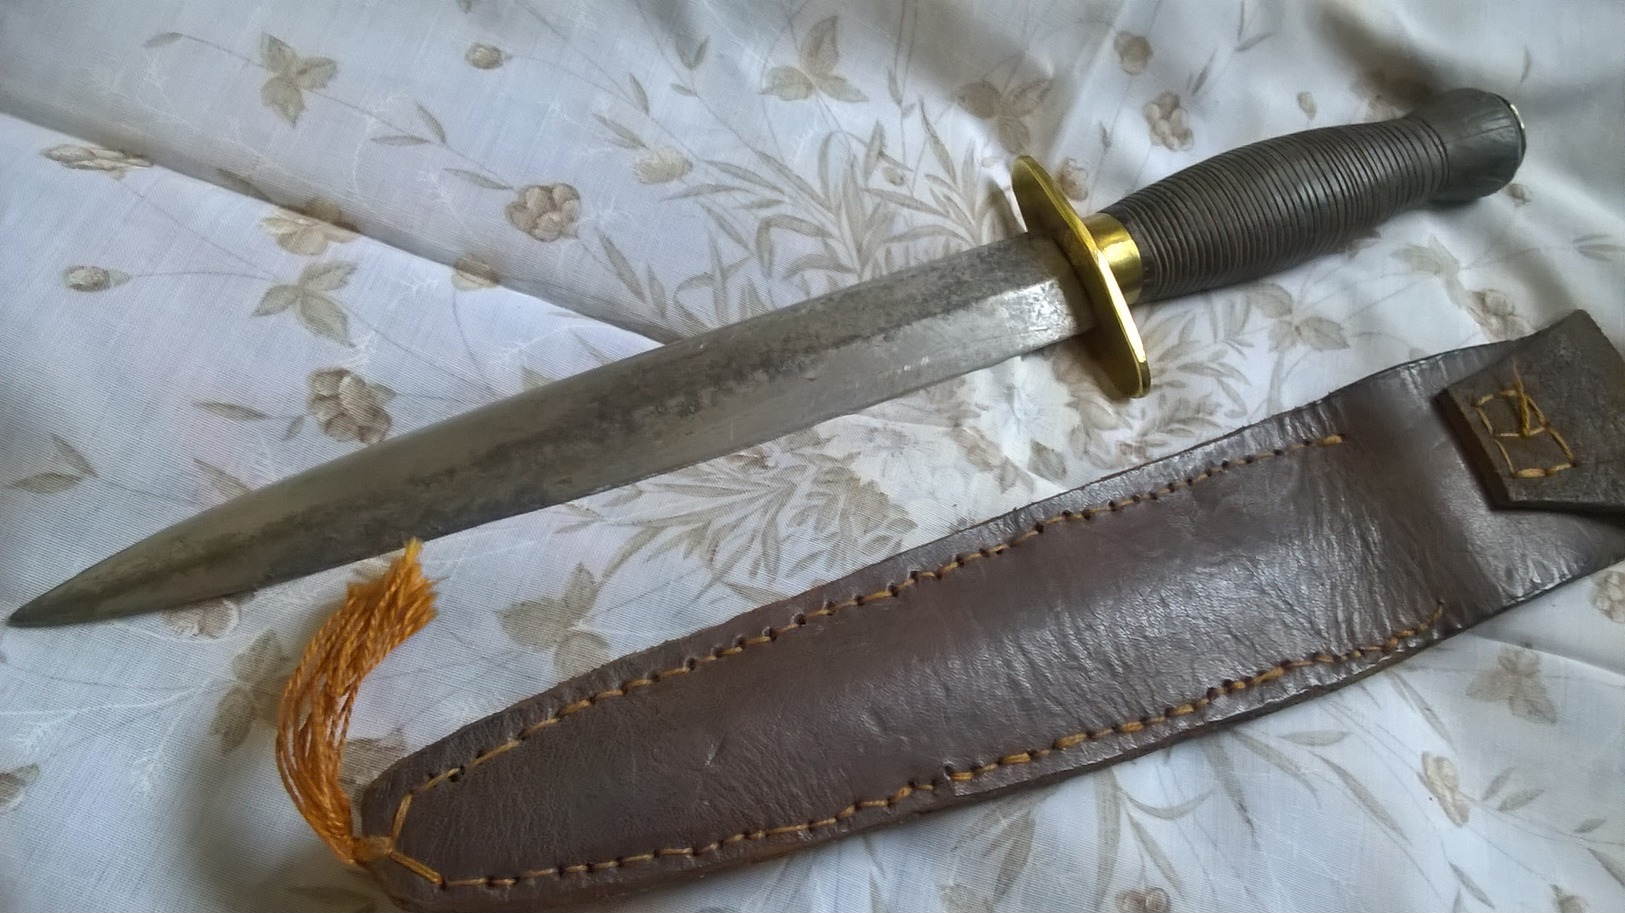 Dague - Knives/Swords